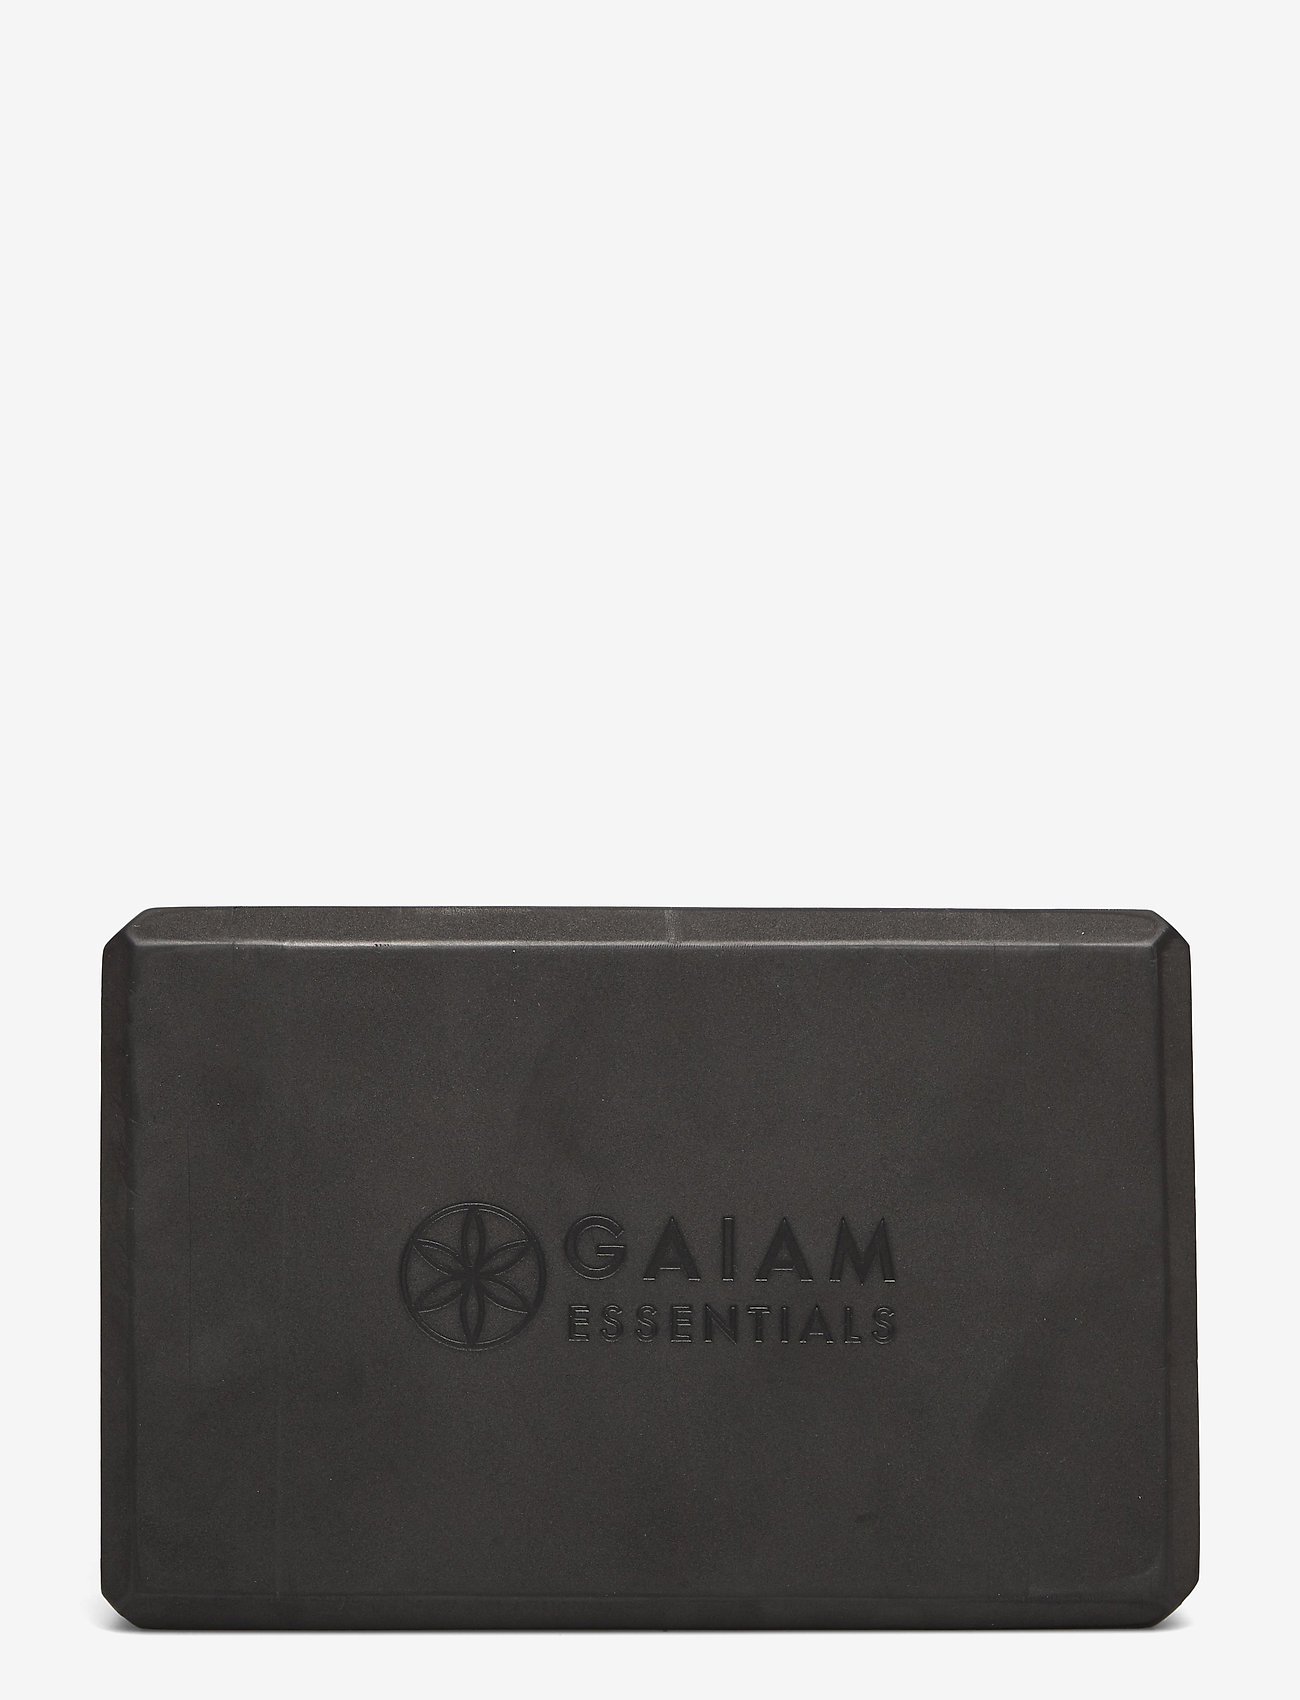 Gaiam - GAIAM ESSENTIALS YOGA BRICK BLACK - yogablokken en -riemen - black - 1